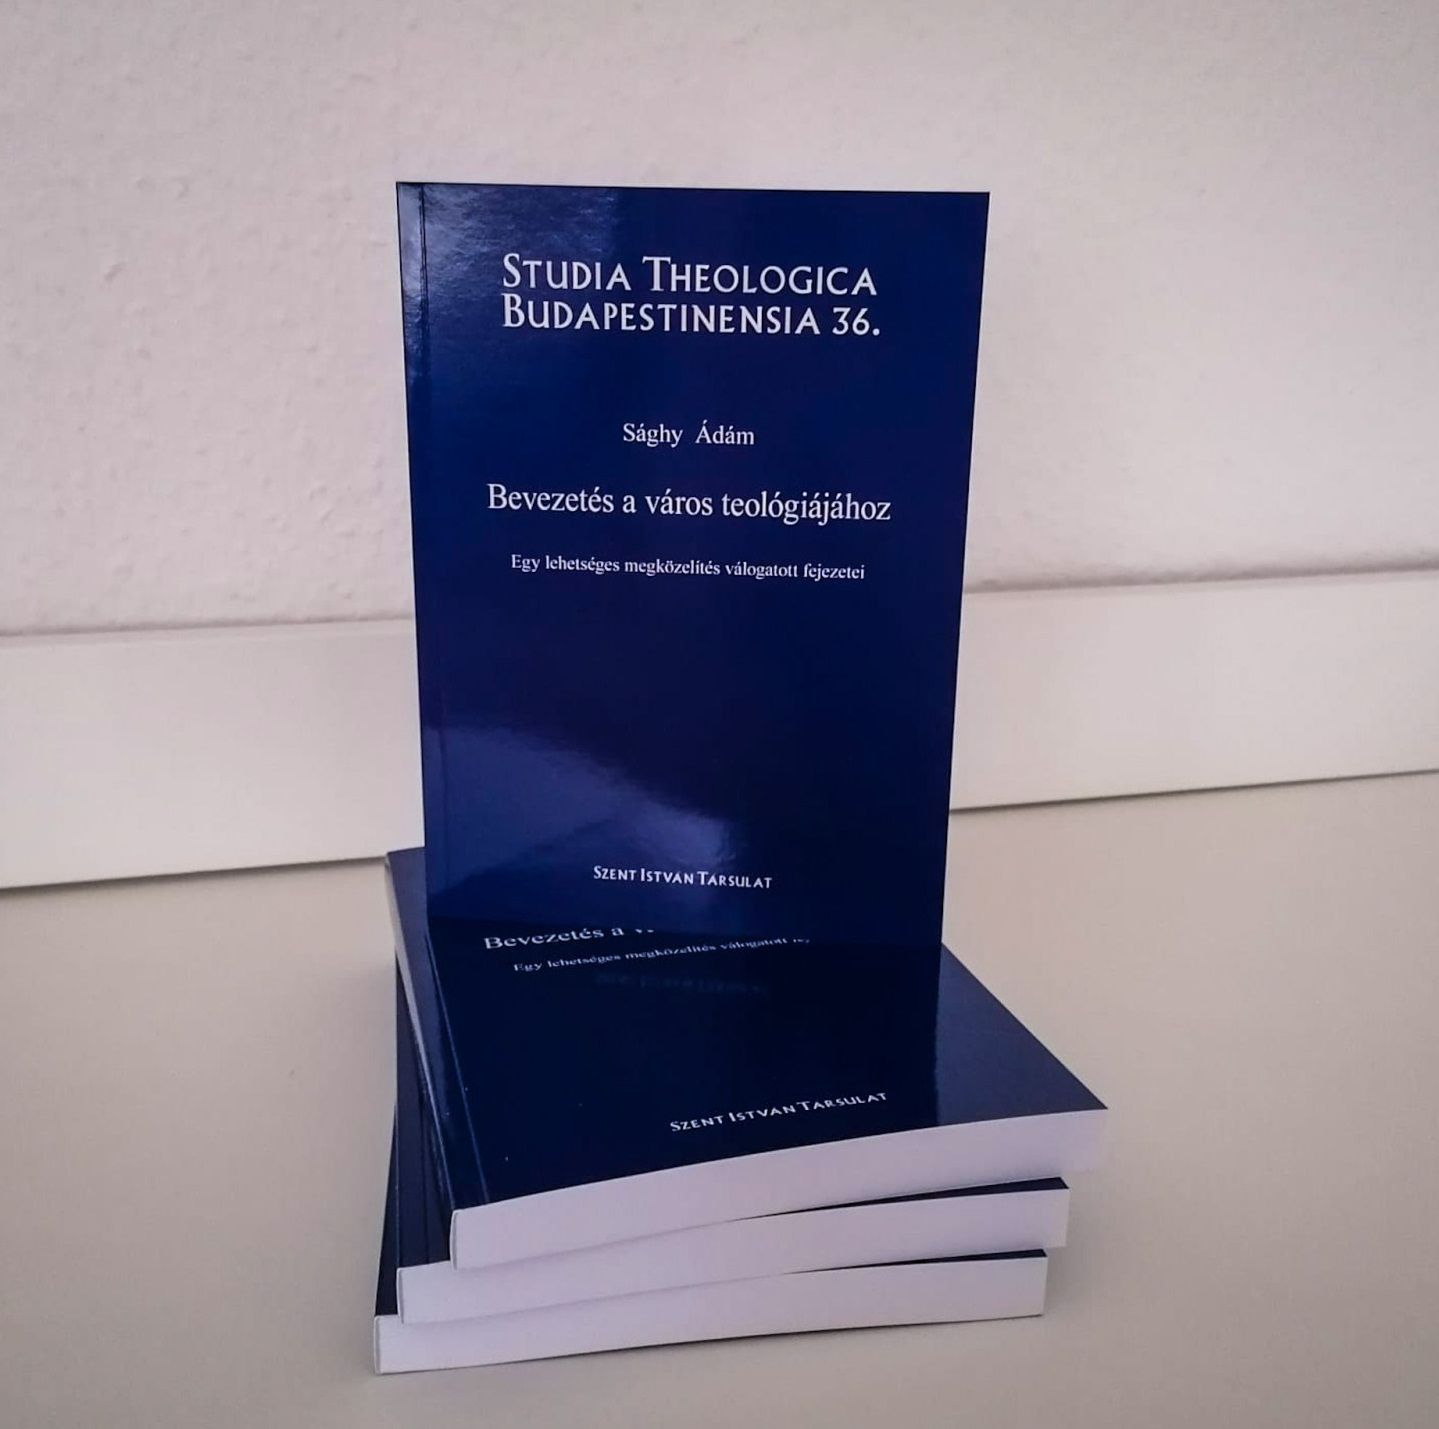 Bevezetés a város teológiájához – ezzel a címmel jelent meg a Studia Theologica Budapestinensia könyvsorozat újabb kötete